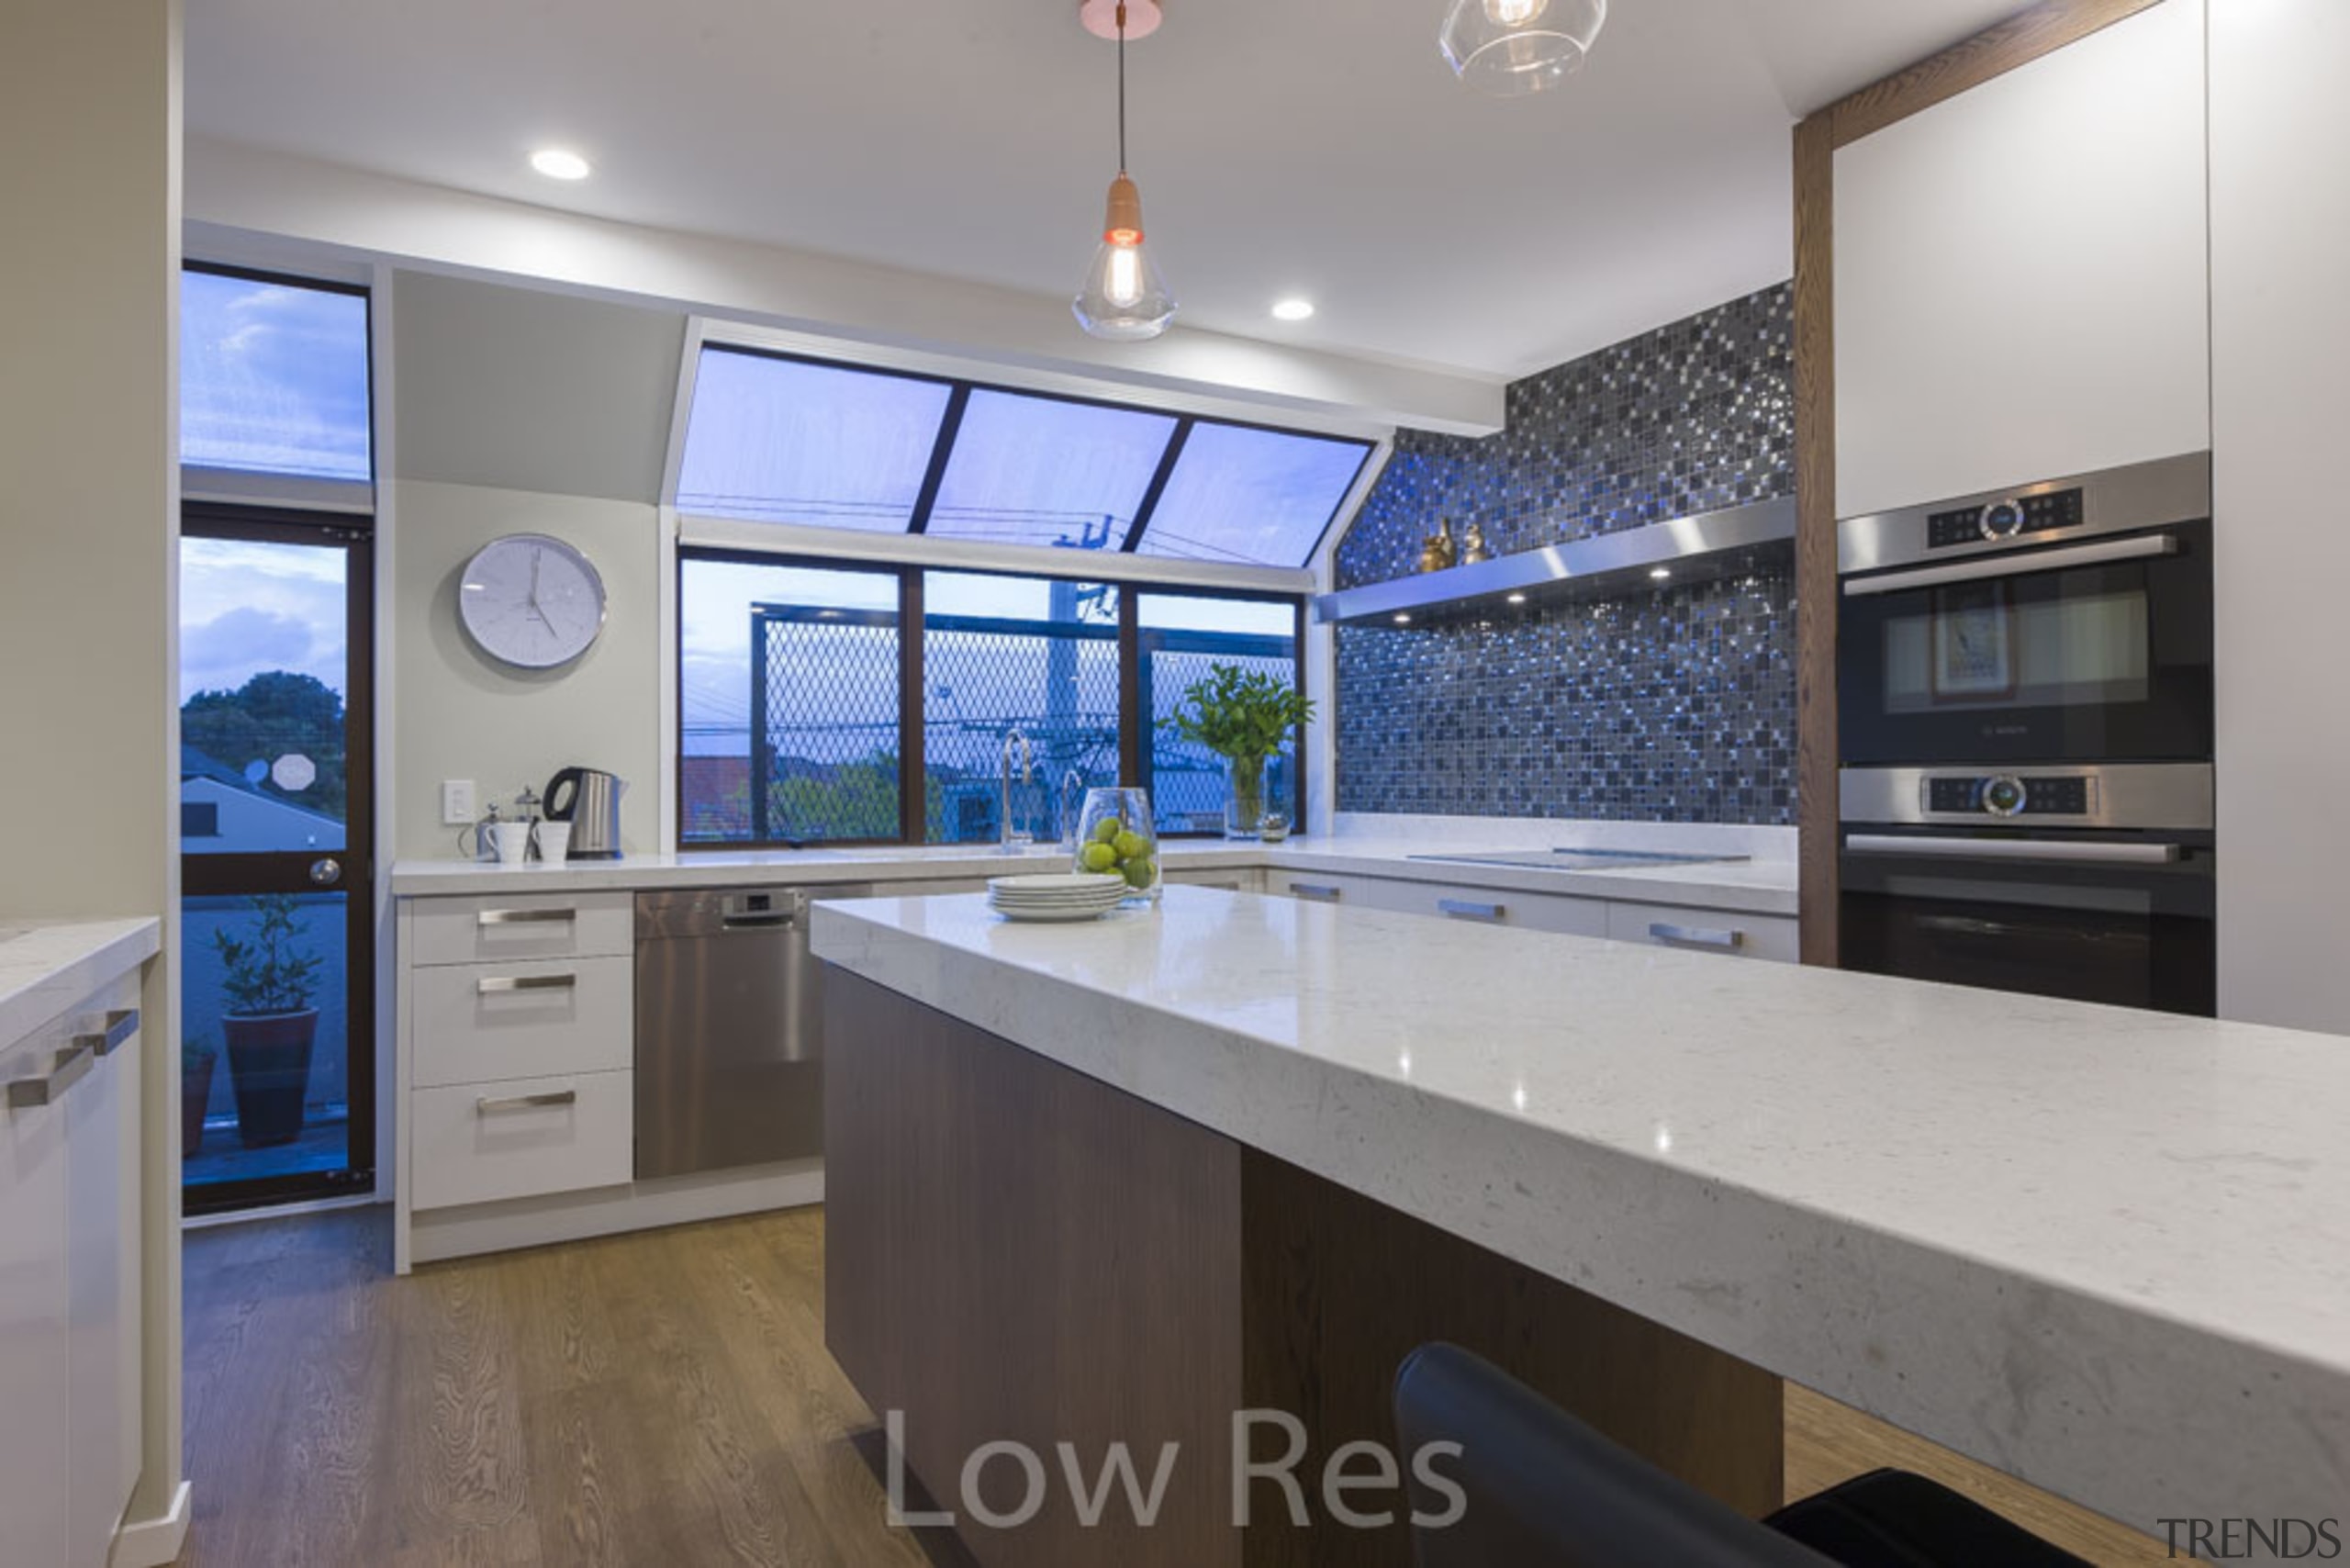 St Heliers III - countertop | interior design countertop, interior design, kitchen, property, real estate, gray